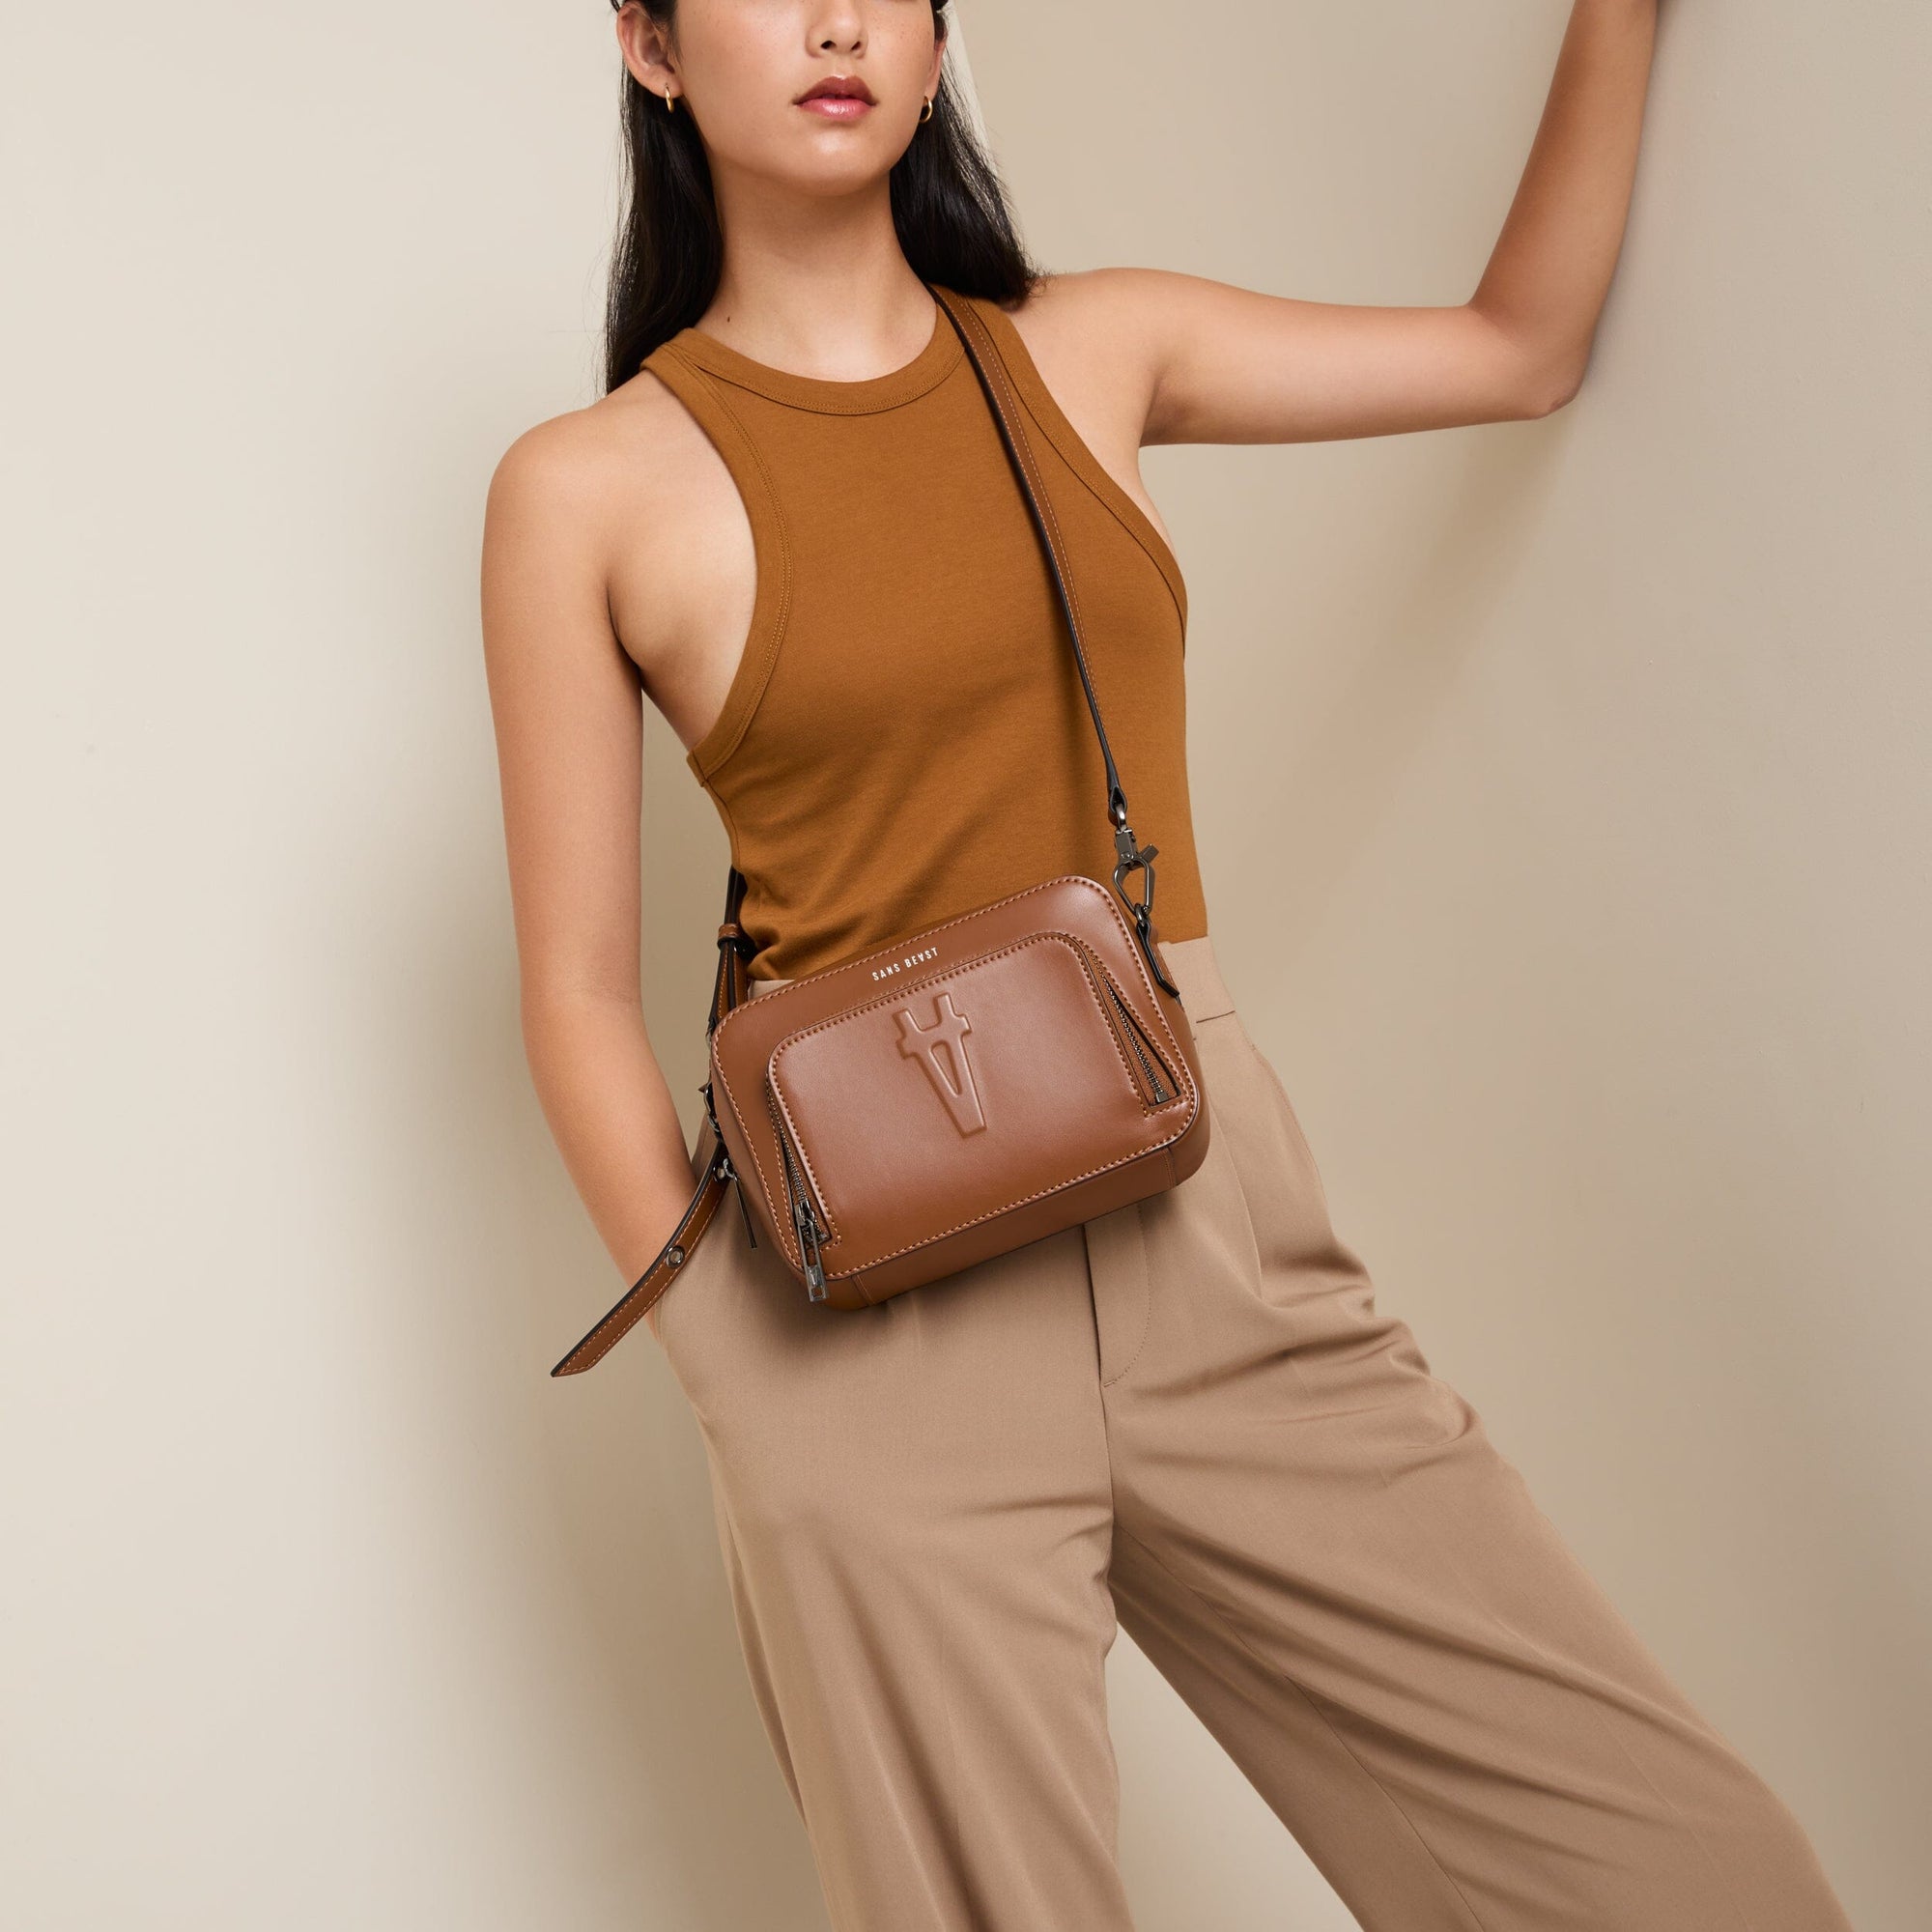 Tari wears a tan toned top + pants with the Sojourn vegan crossbody bag in Cinnamon